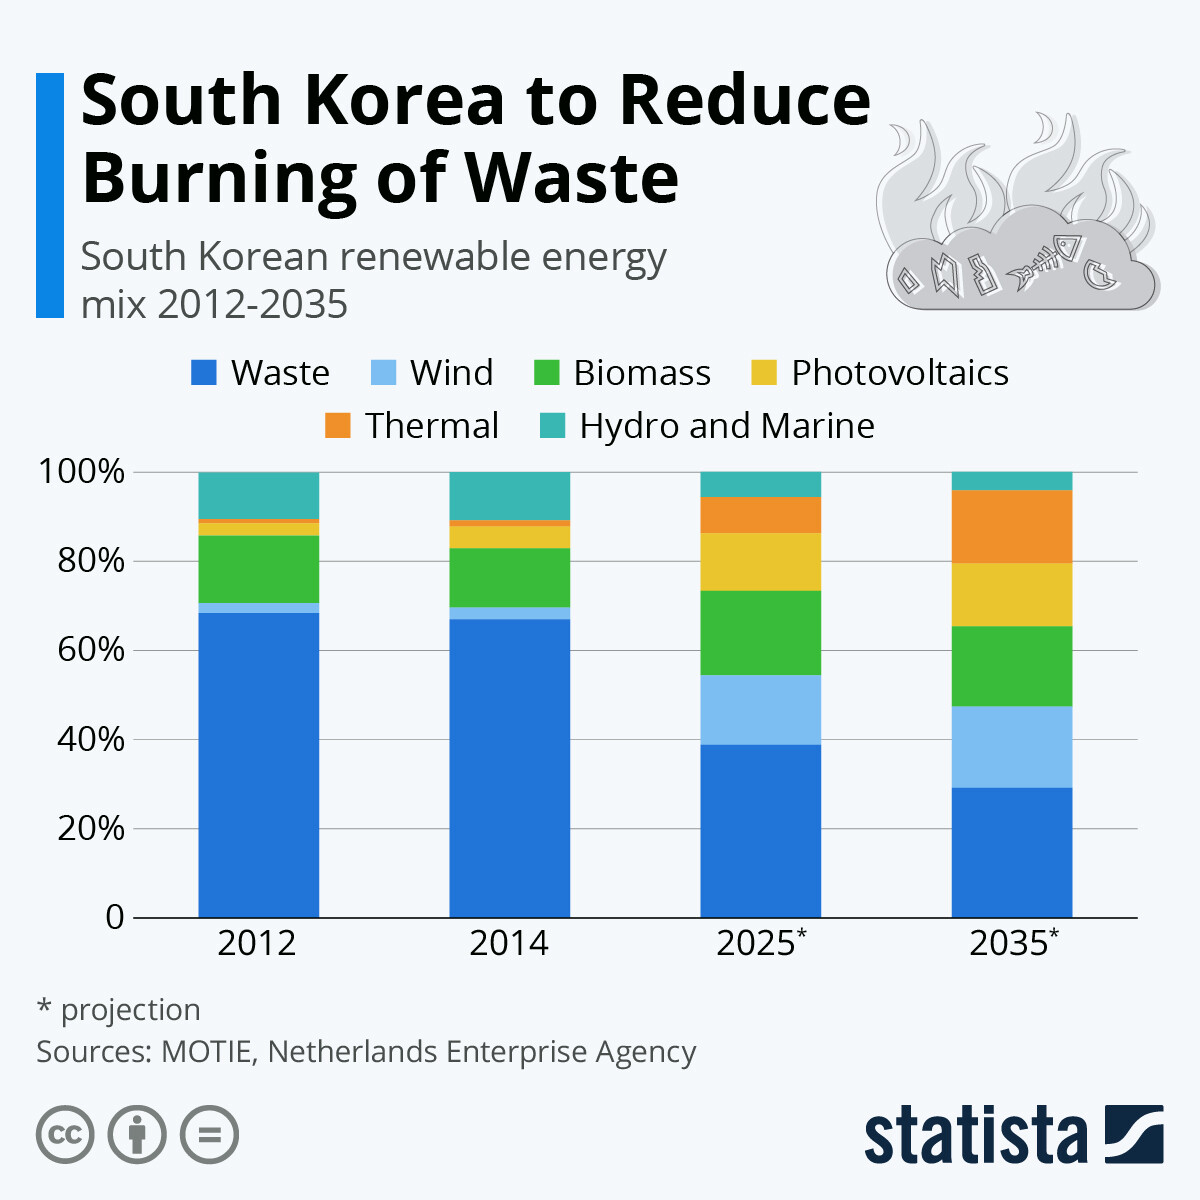 Infografía: El dilema de los residuos en Corea del Sur | estadista 